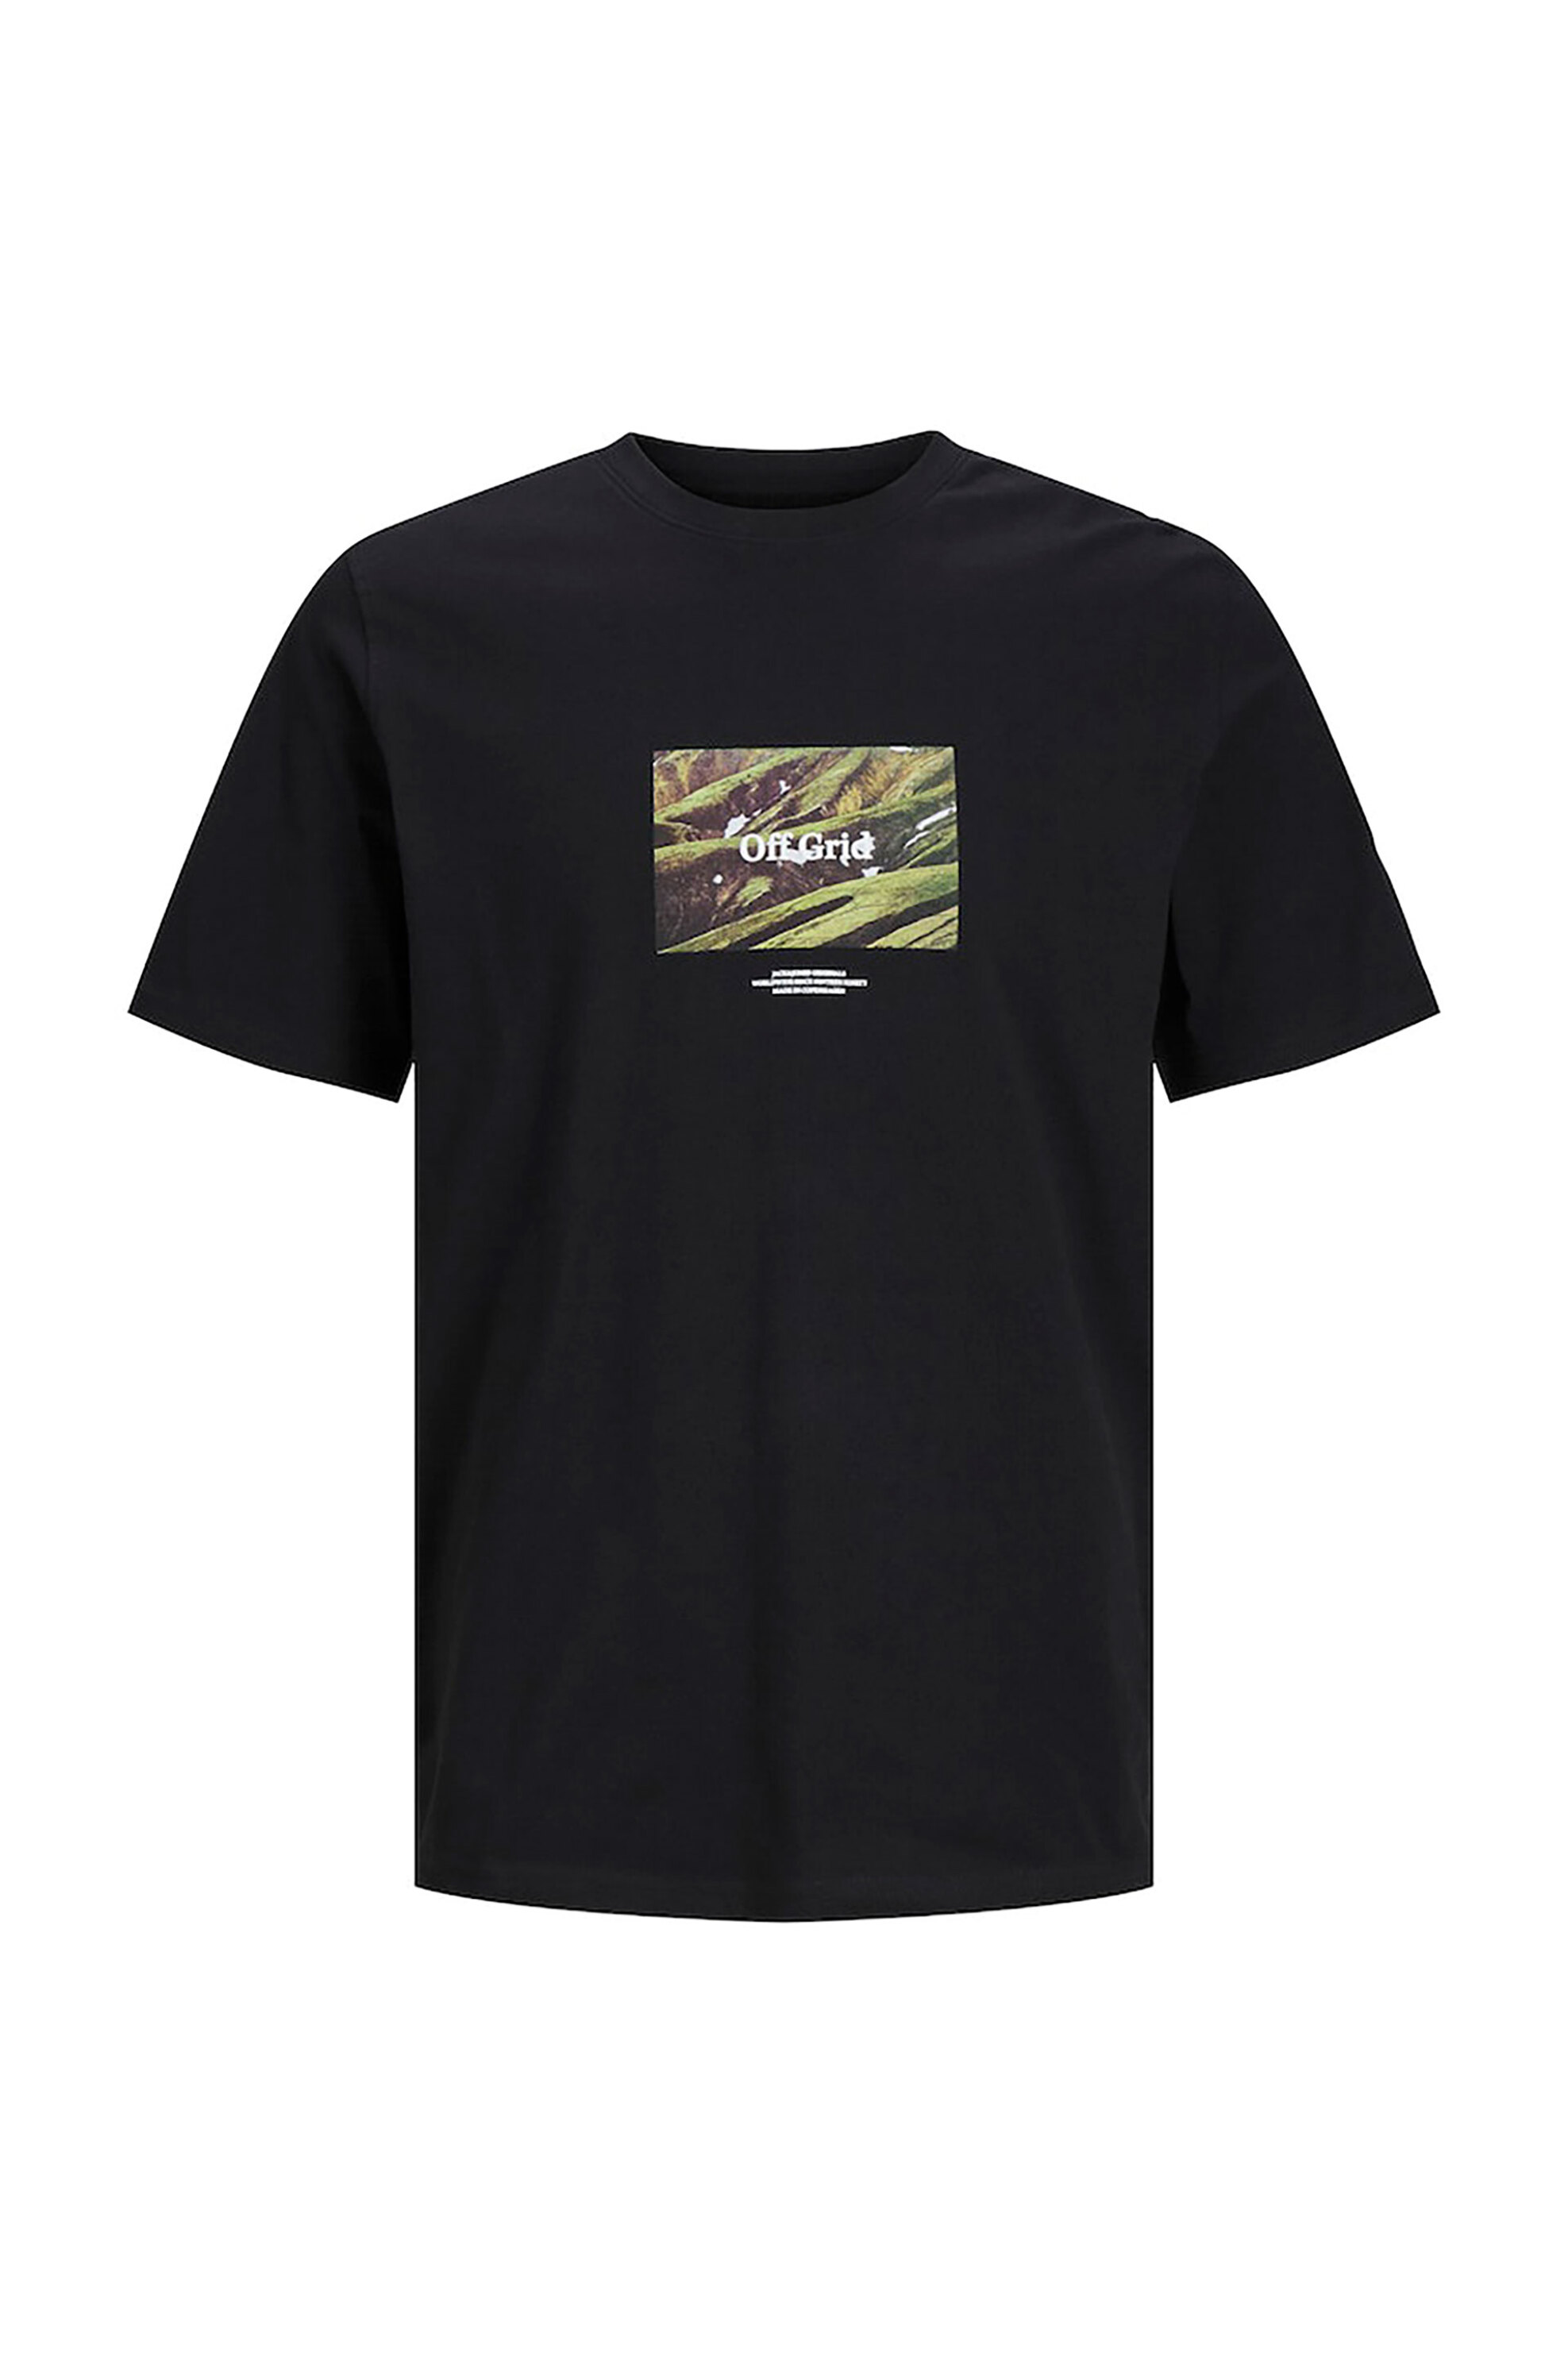 Ανδρική Μόδα > Ανδρικά Ρούχα > Ανδρικές Μπλούζες > Ανδρικά T-Shirts JACK & JONES ανδρικό T-shirt με graphic print Regular Fit - 12253605 Μαύρο